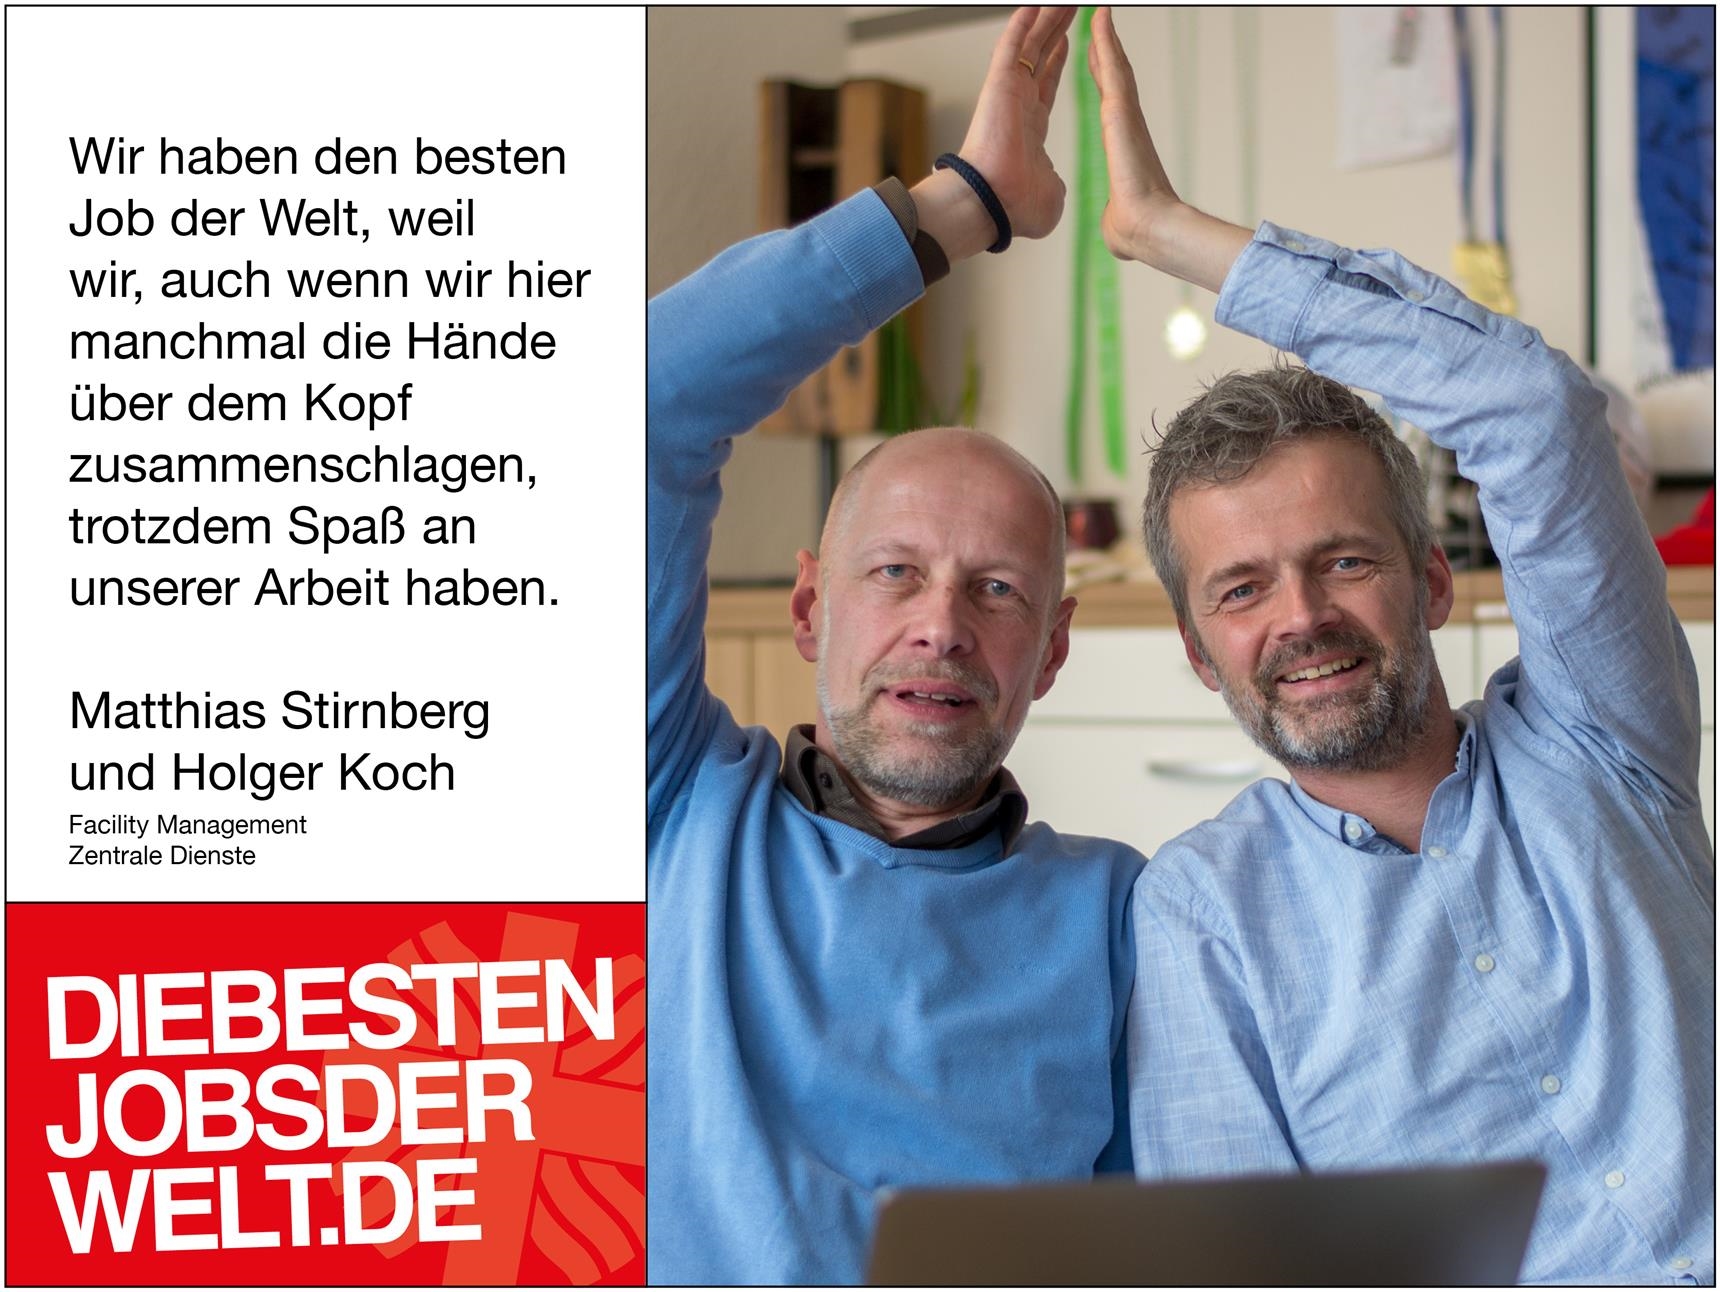 diebestenjobsderwelt - Matthias Stirnberg und Holger Koch (Foto: Miriam Konietzny)